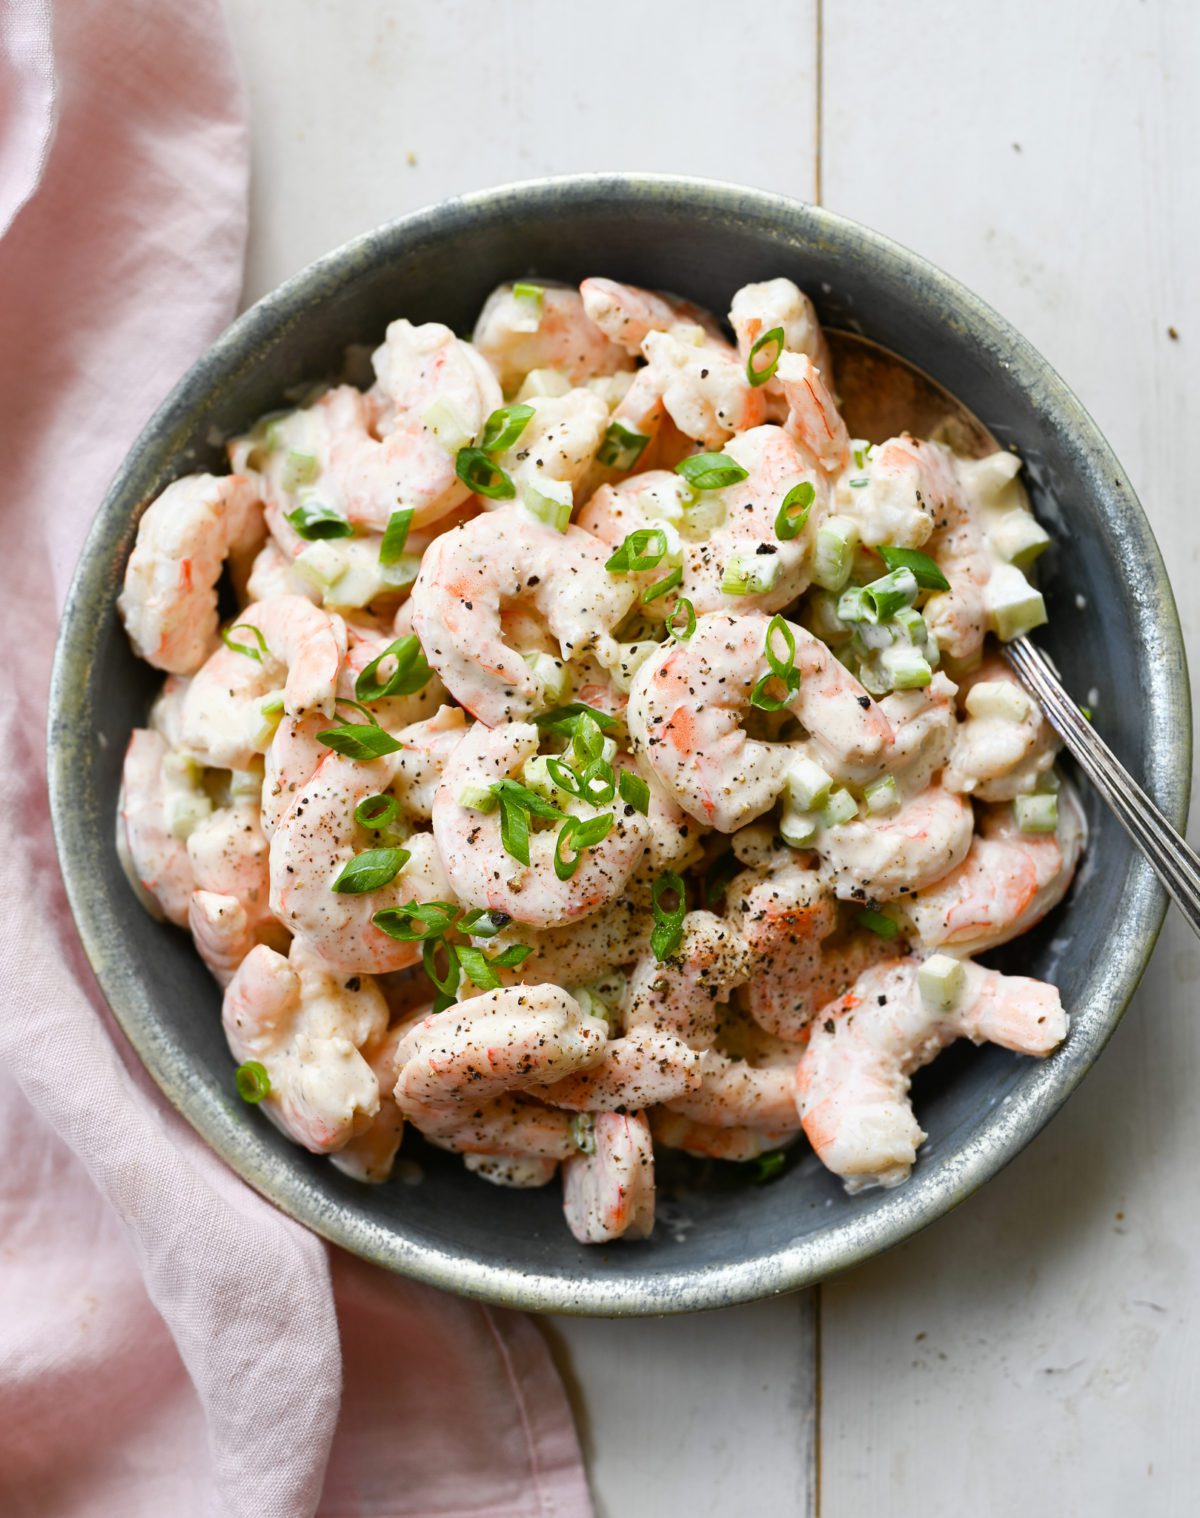 Top 4 Shrimp Salad Recipes